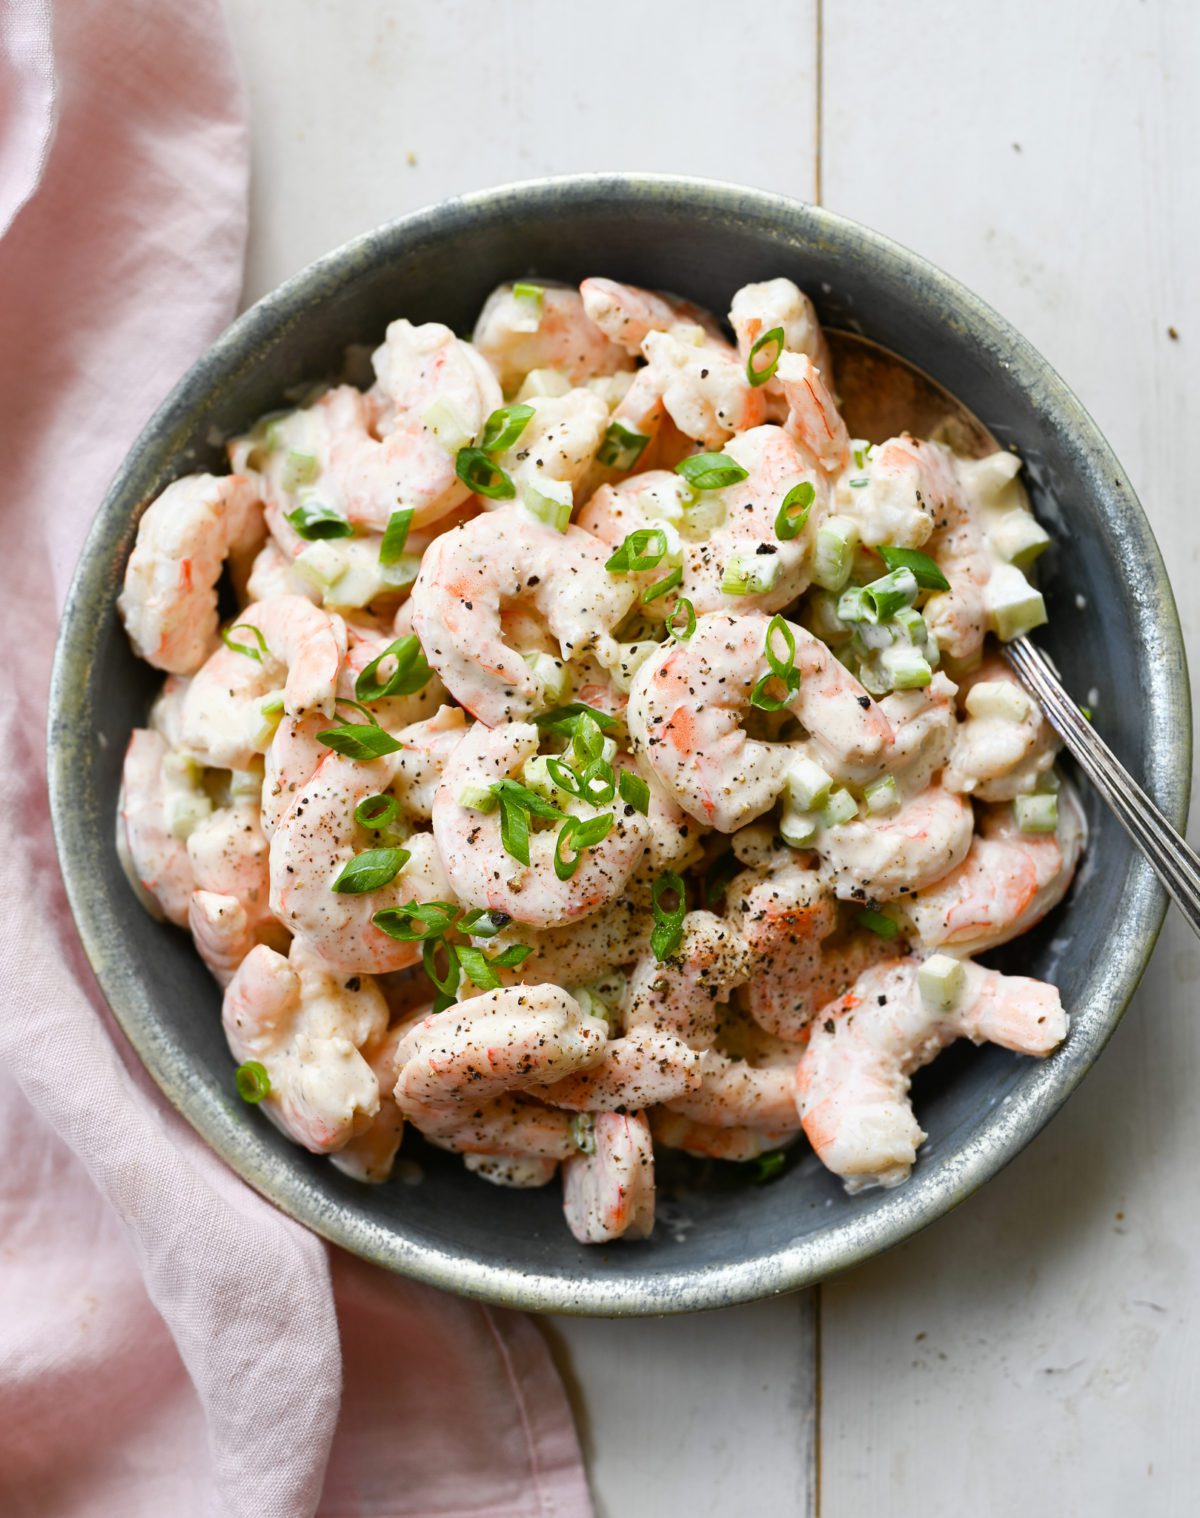 Top 4 Shrimp Salad Recipes